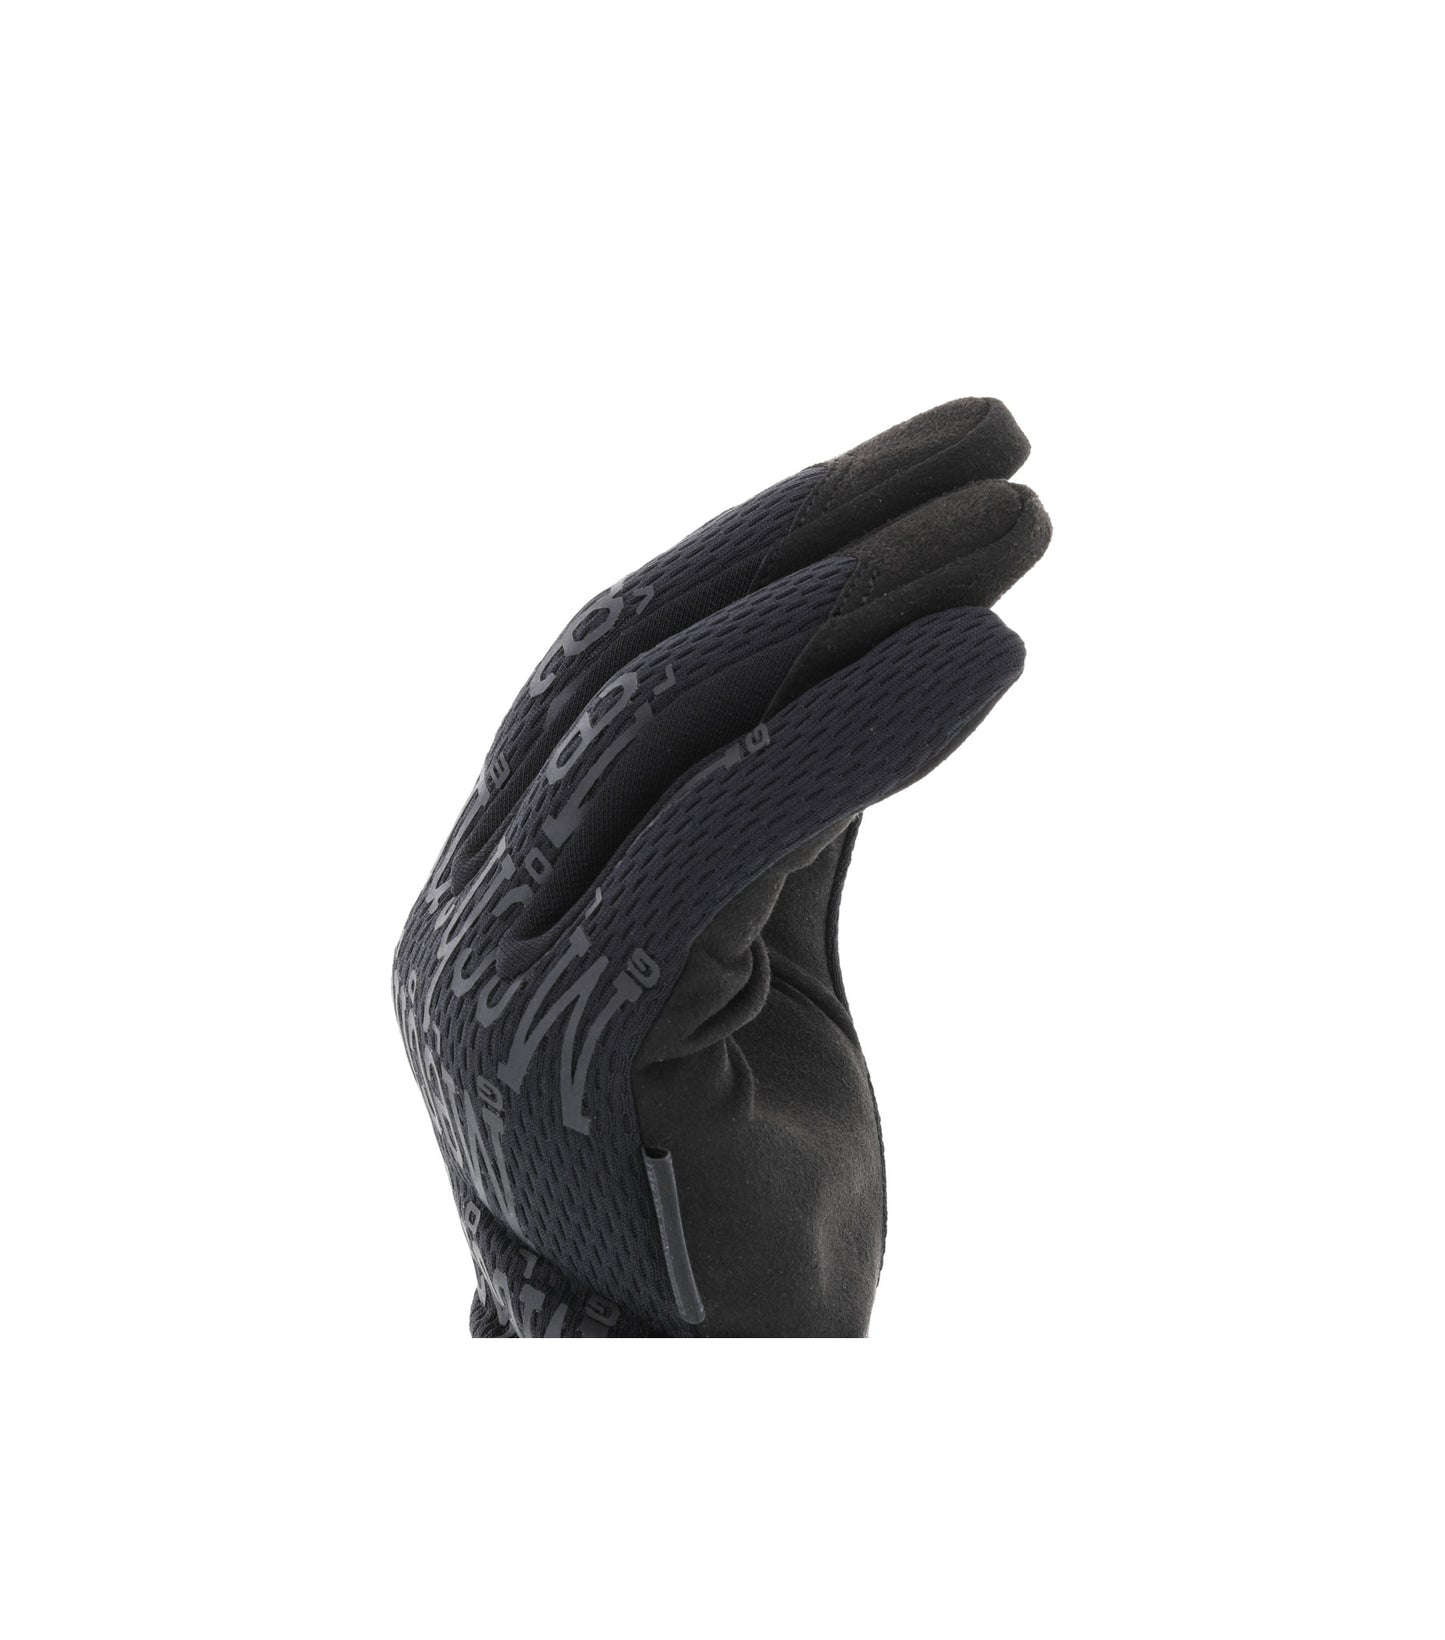 Mechanix Wear Original Covert Glove